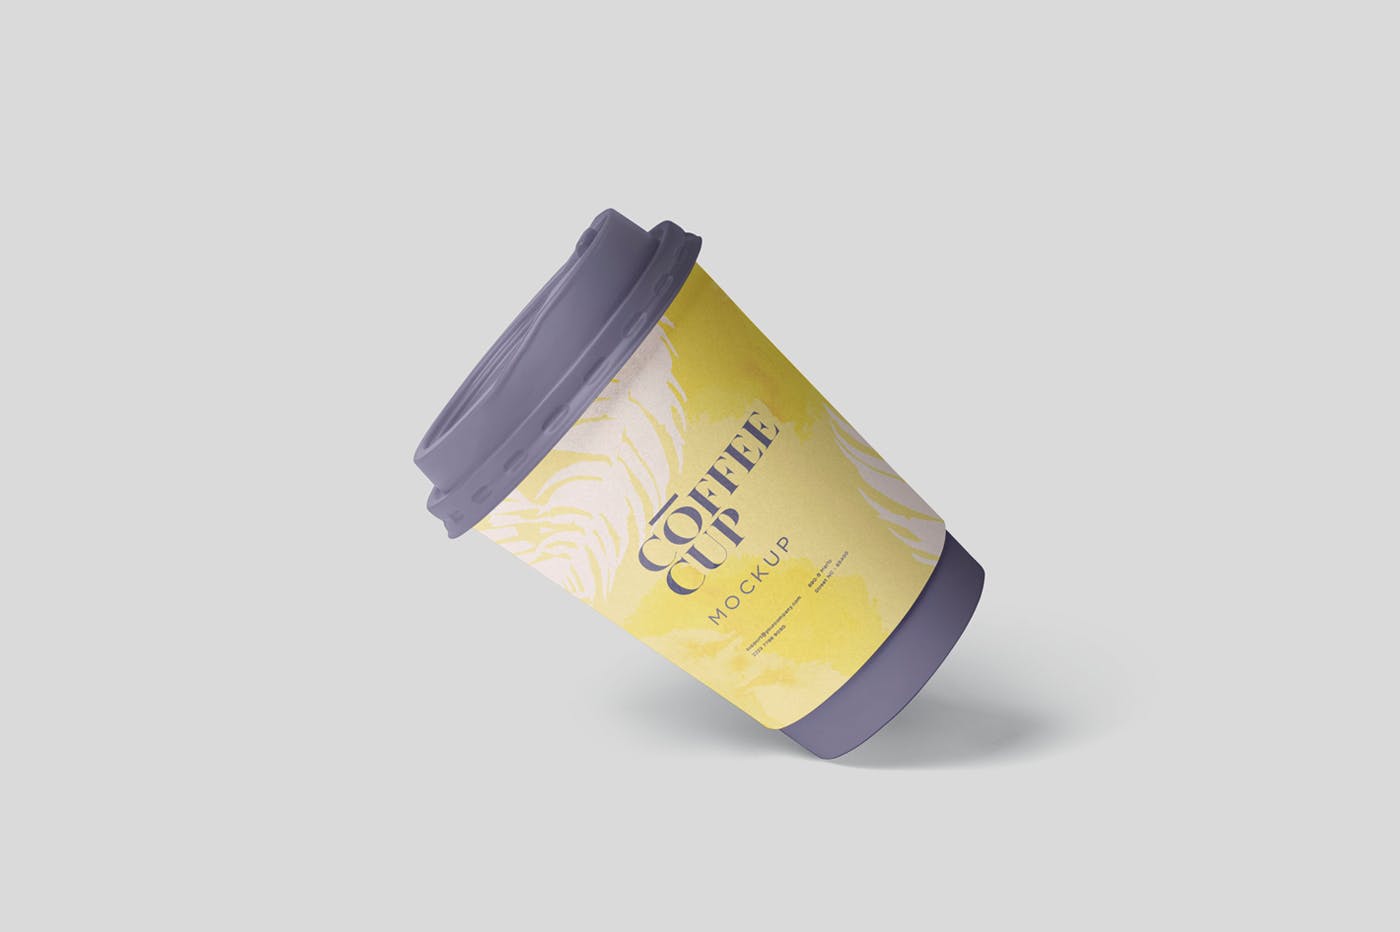 咖啡一次性纸杯设计效果图第一素材精选 Coffee Cup Mockup插图(5)